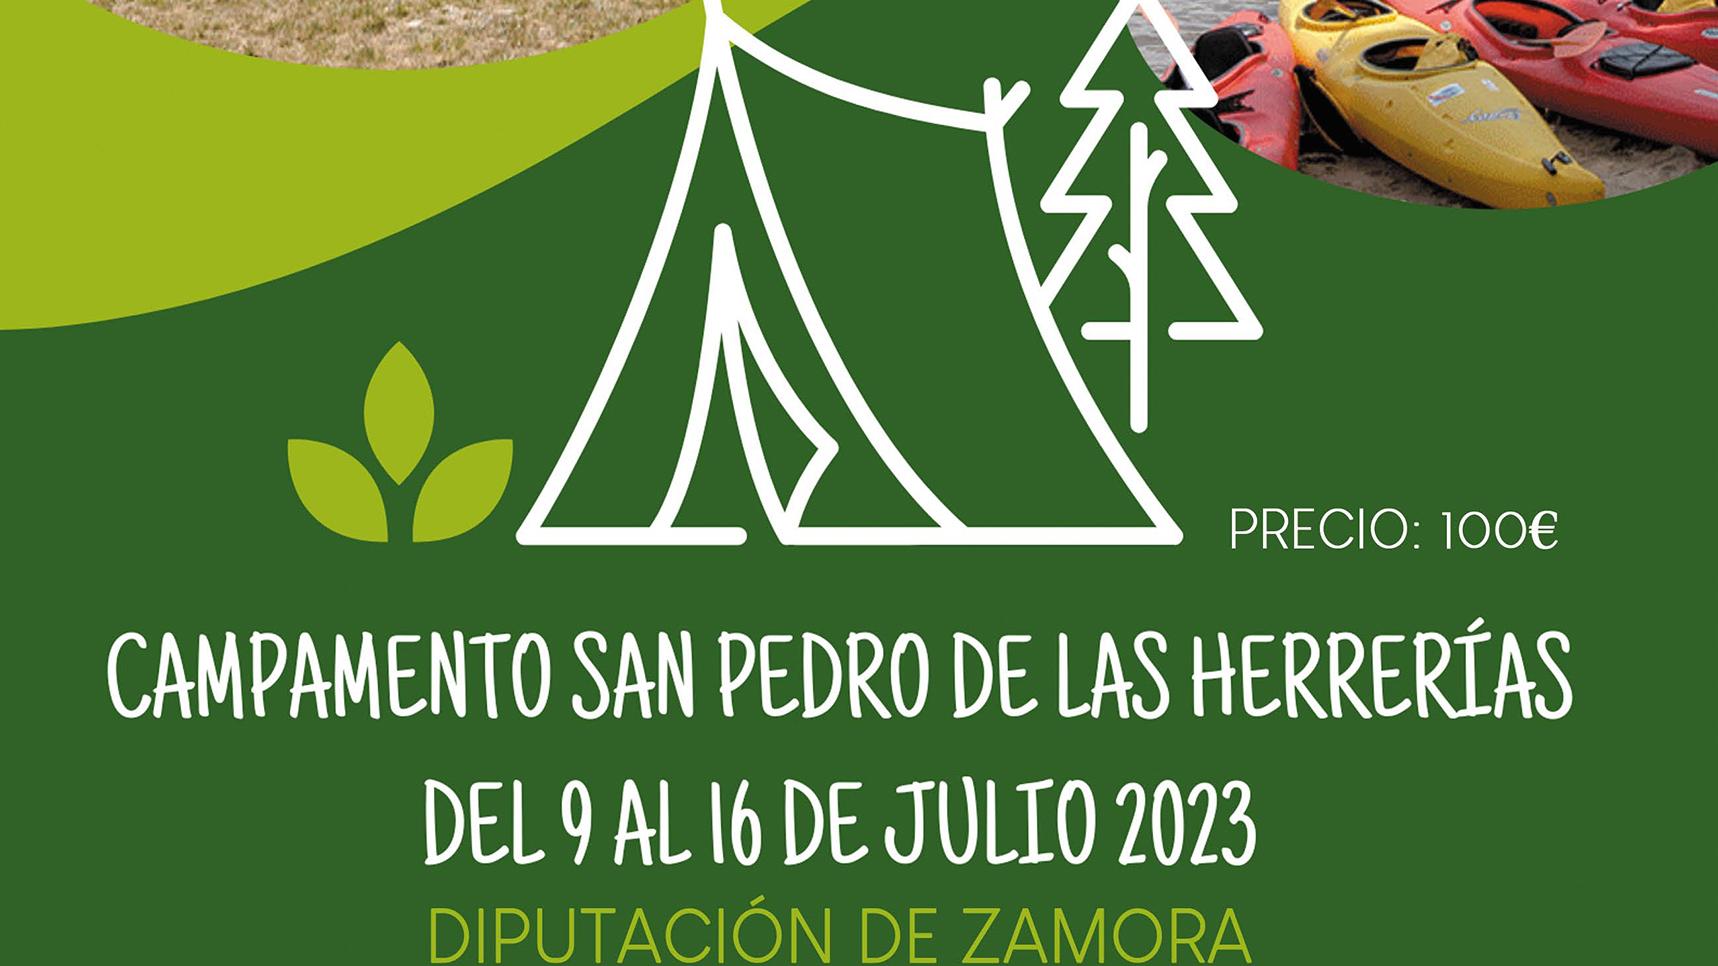 La Diputación ofrece 70 plazas para el campamento San Pedro de las Herrerías